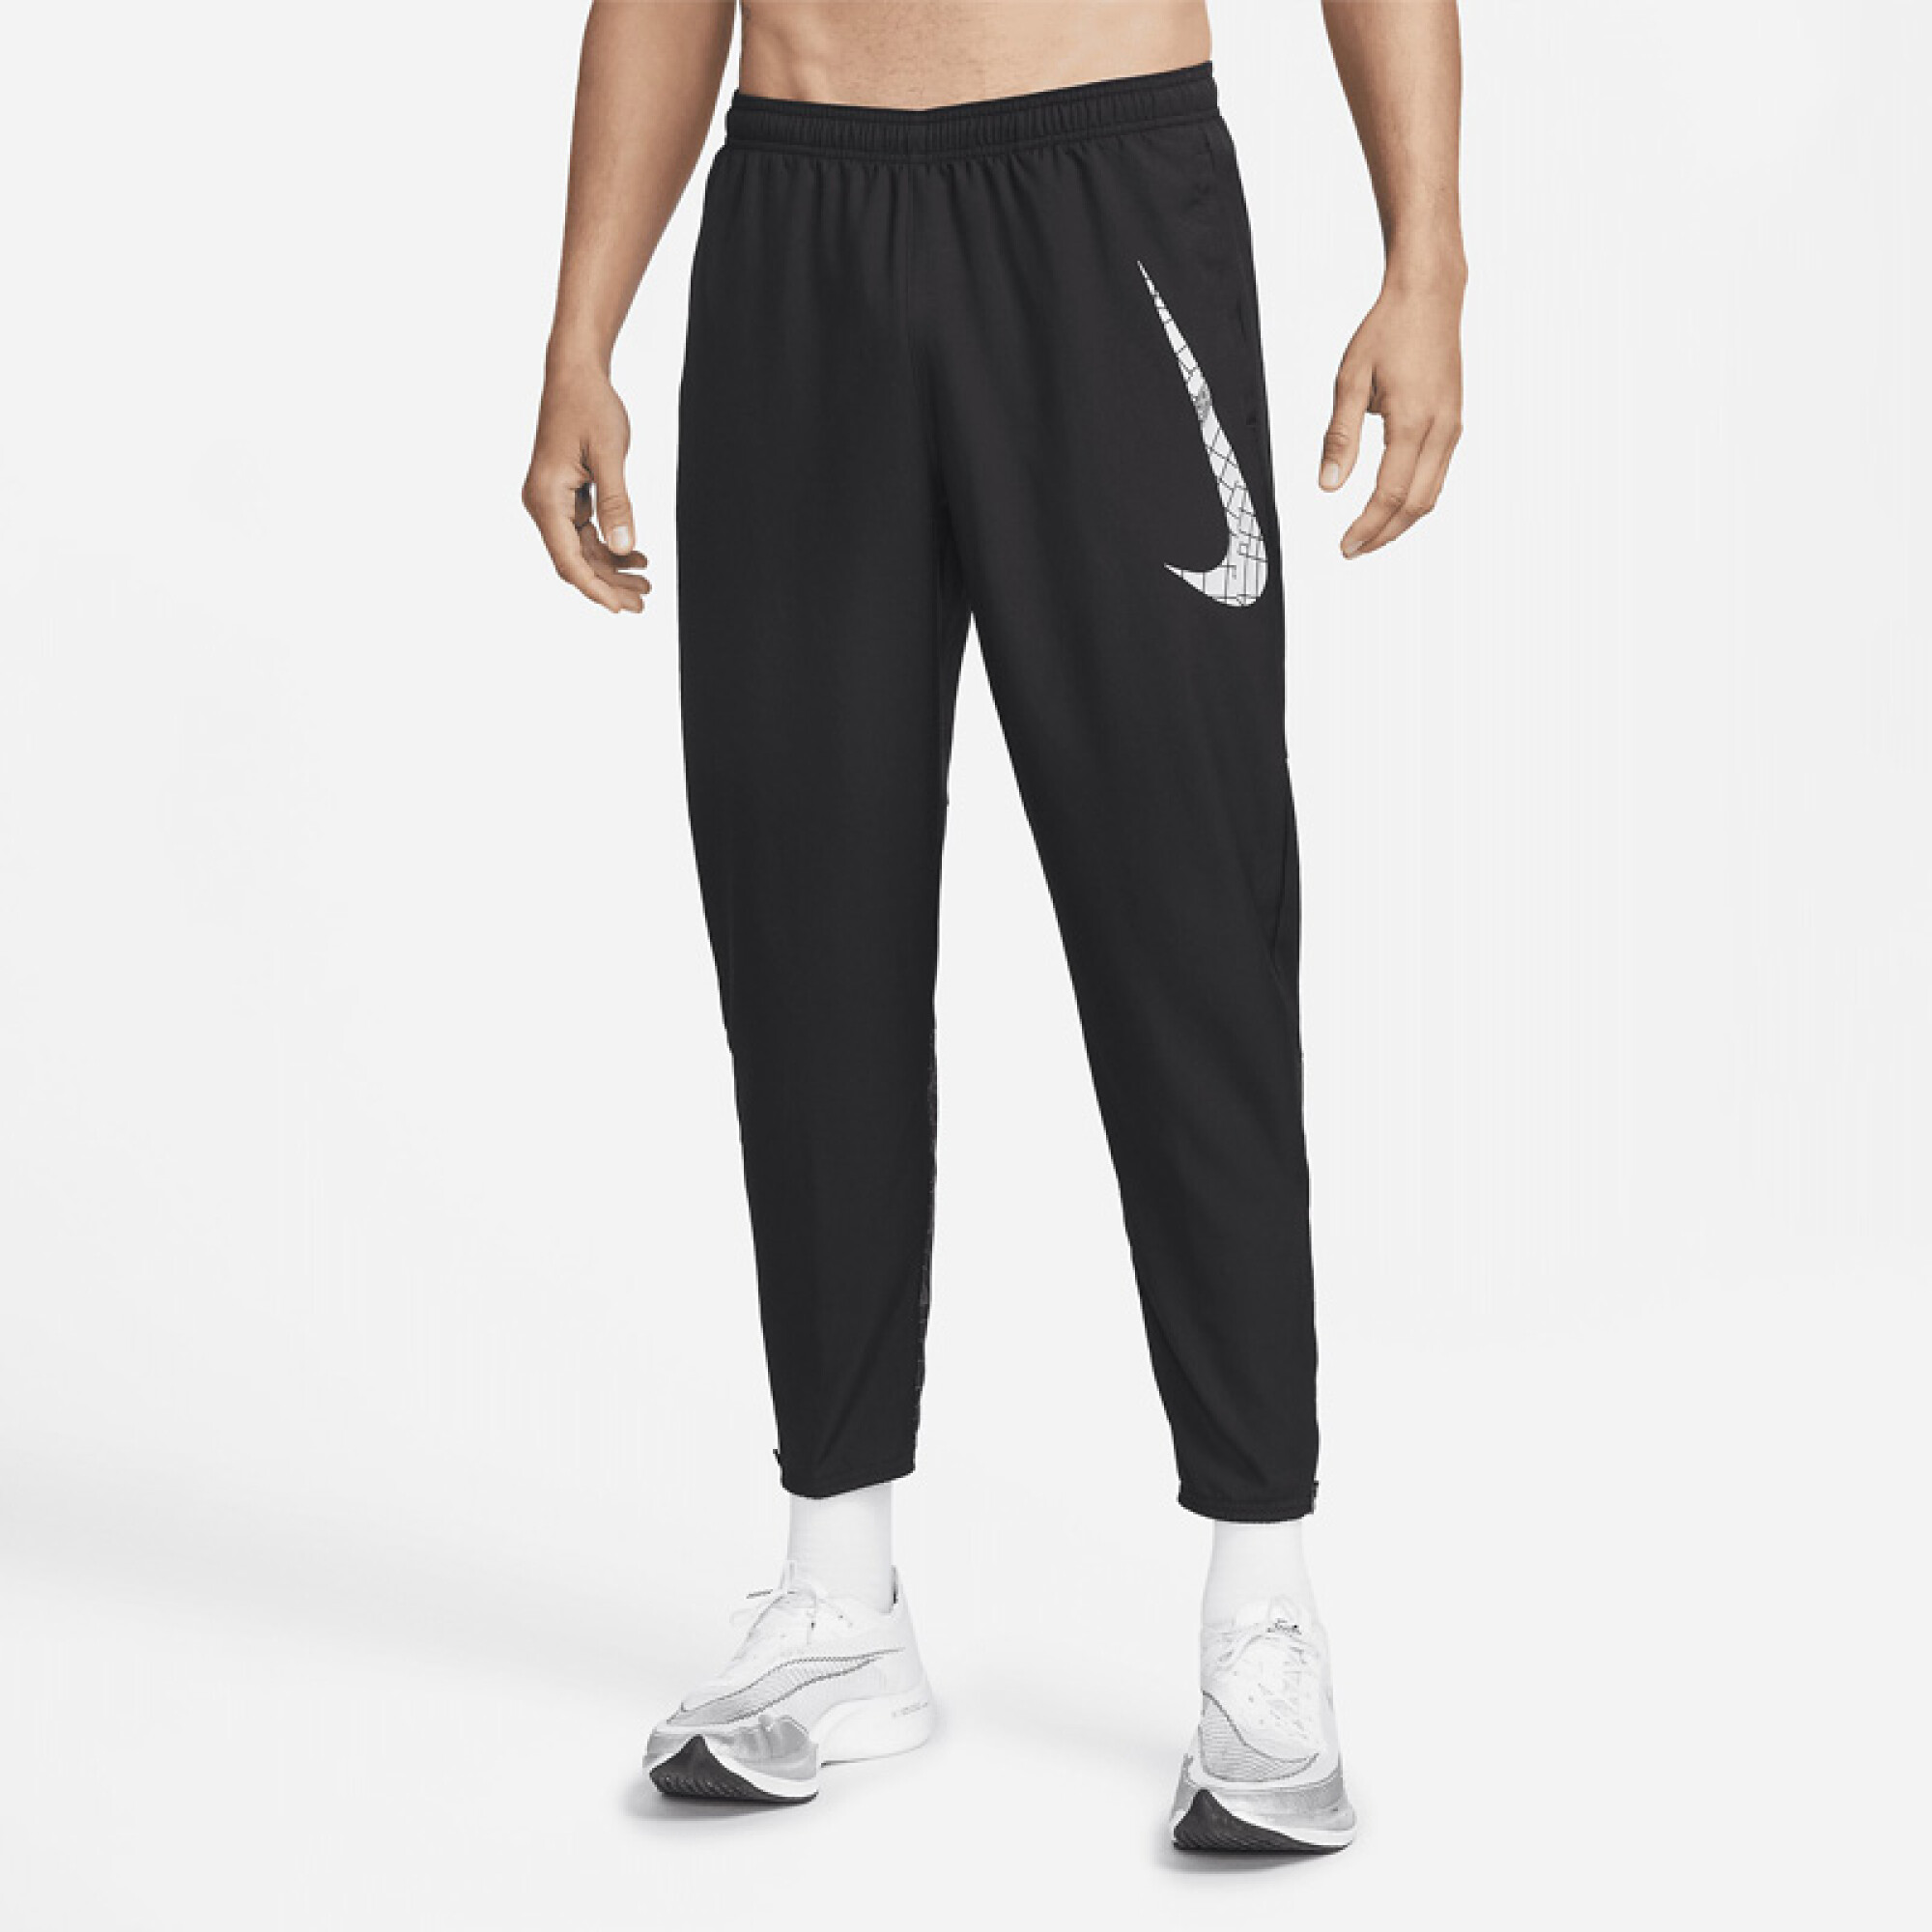 Disciplina Con rapidez fútbol americano Pantalon Nike Dri-fit Run Division Flash Hombre — La Cancha